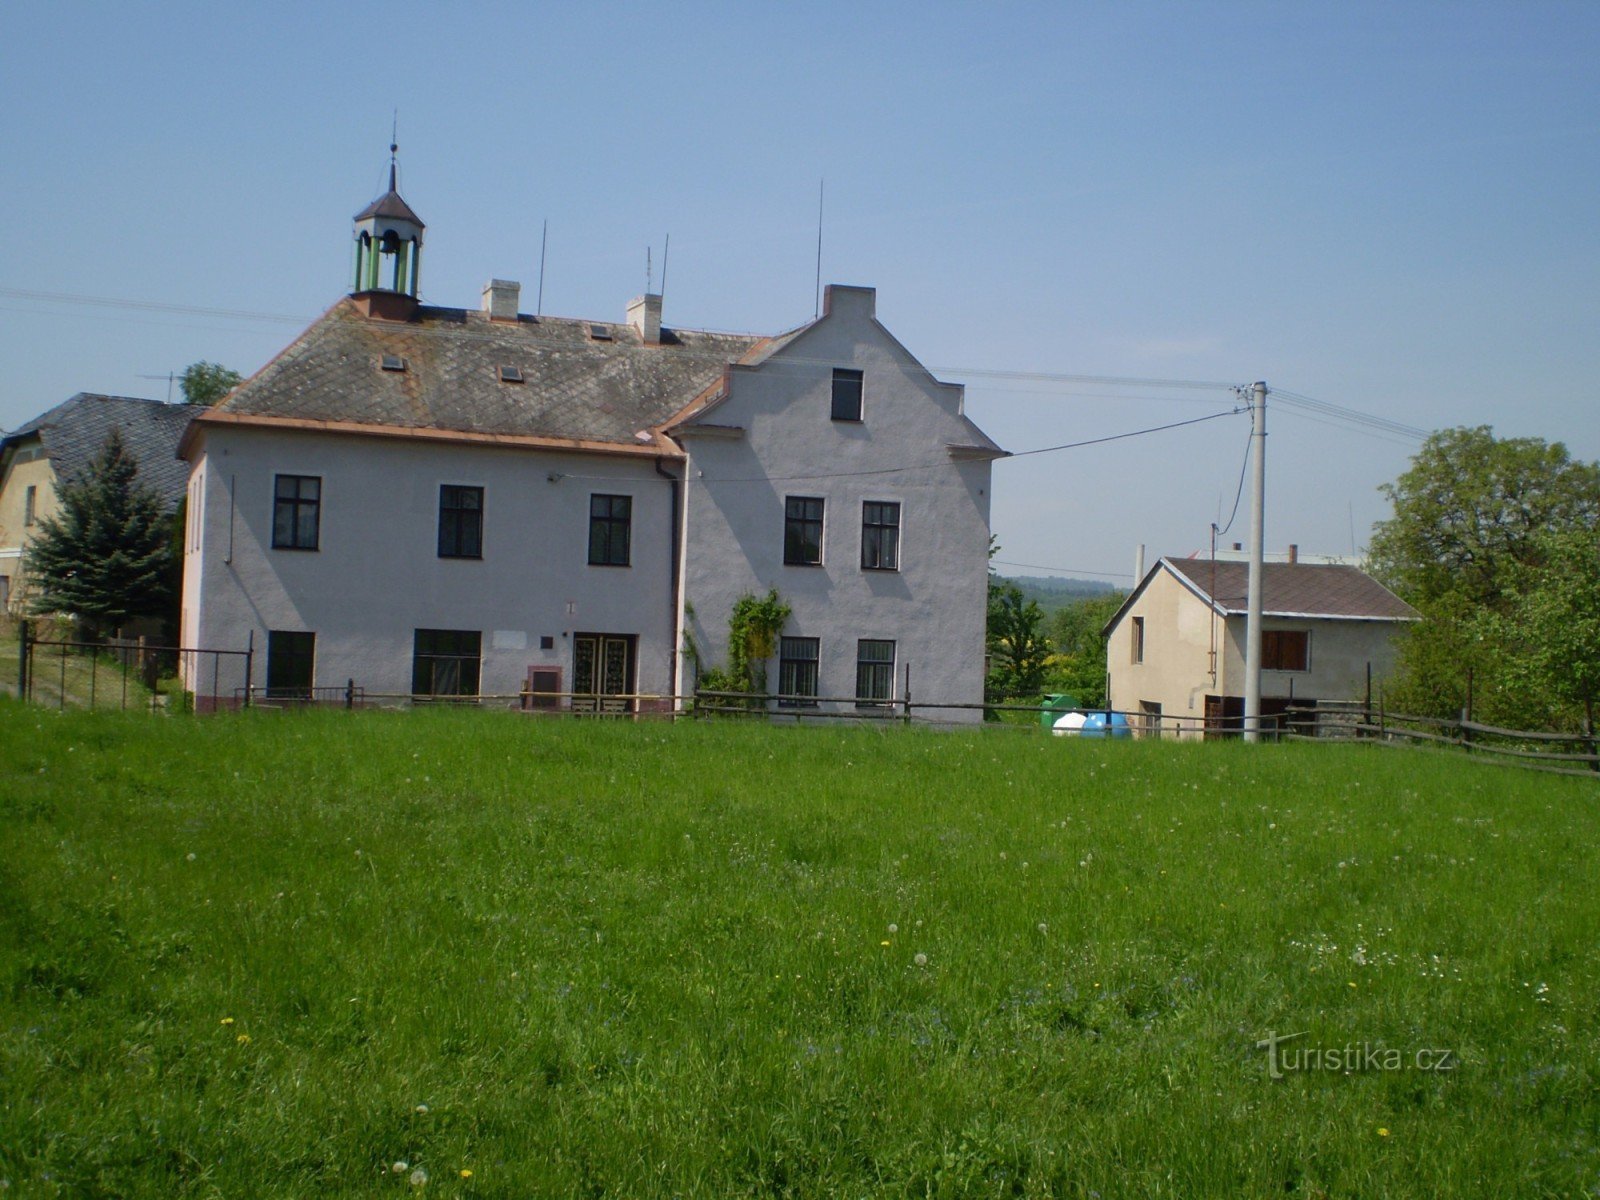 Gemeenschapshuis, oorspronkelijk een voormalige school